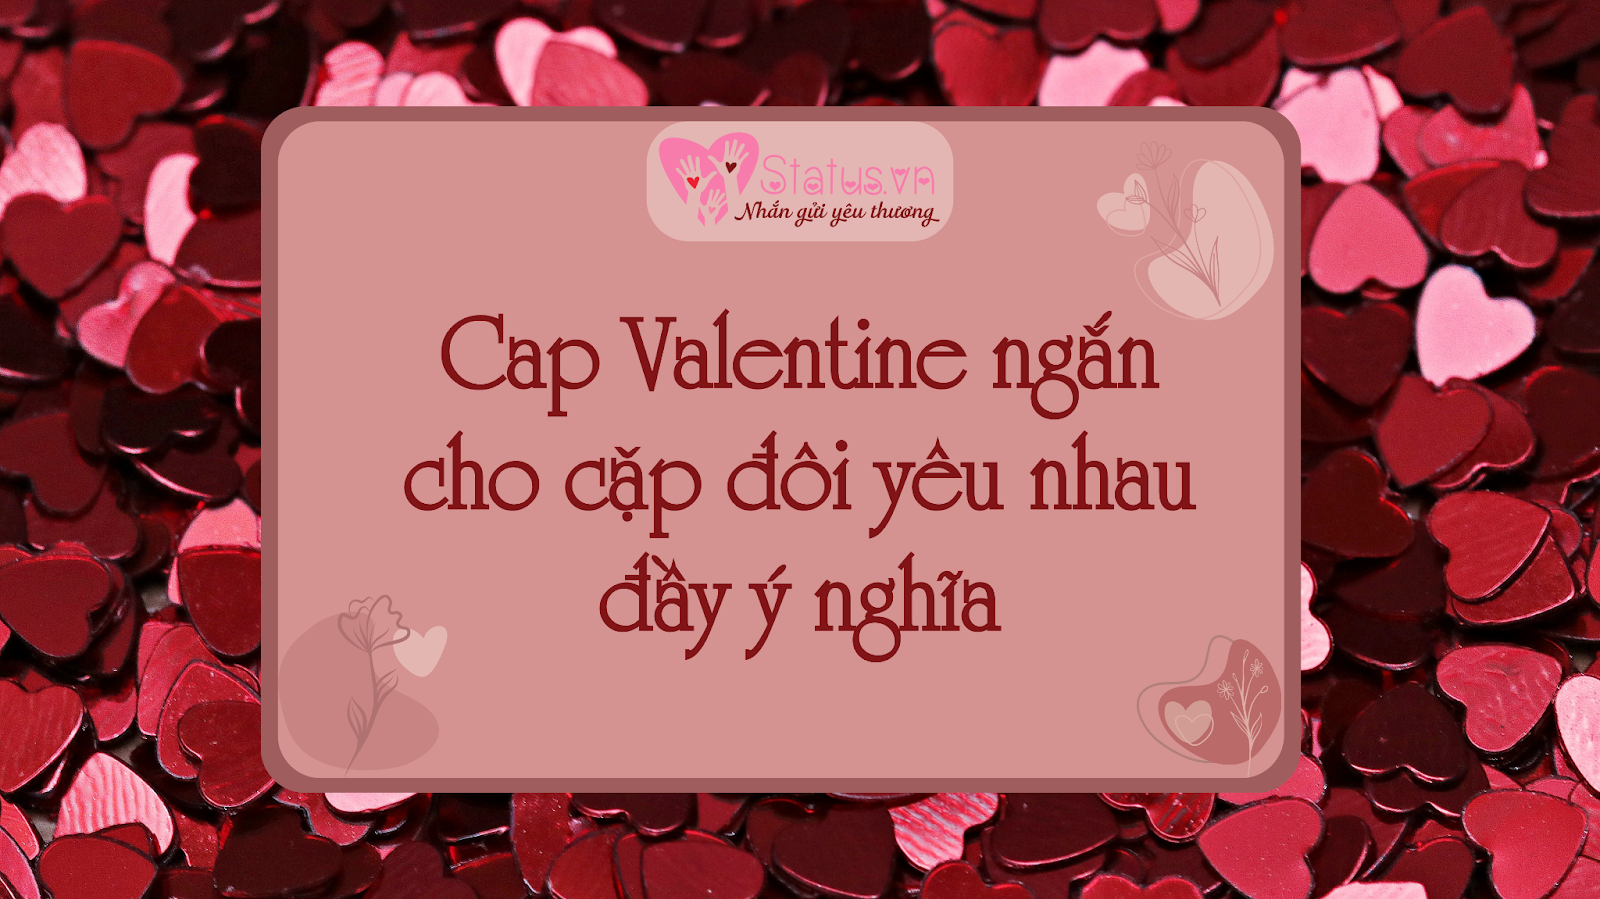 Cap Valentine ngắn đong đầy yêu thương